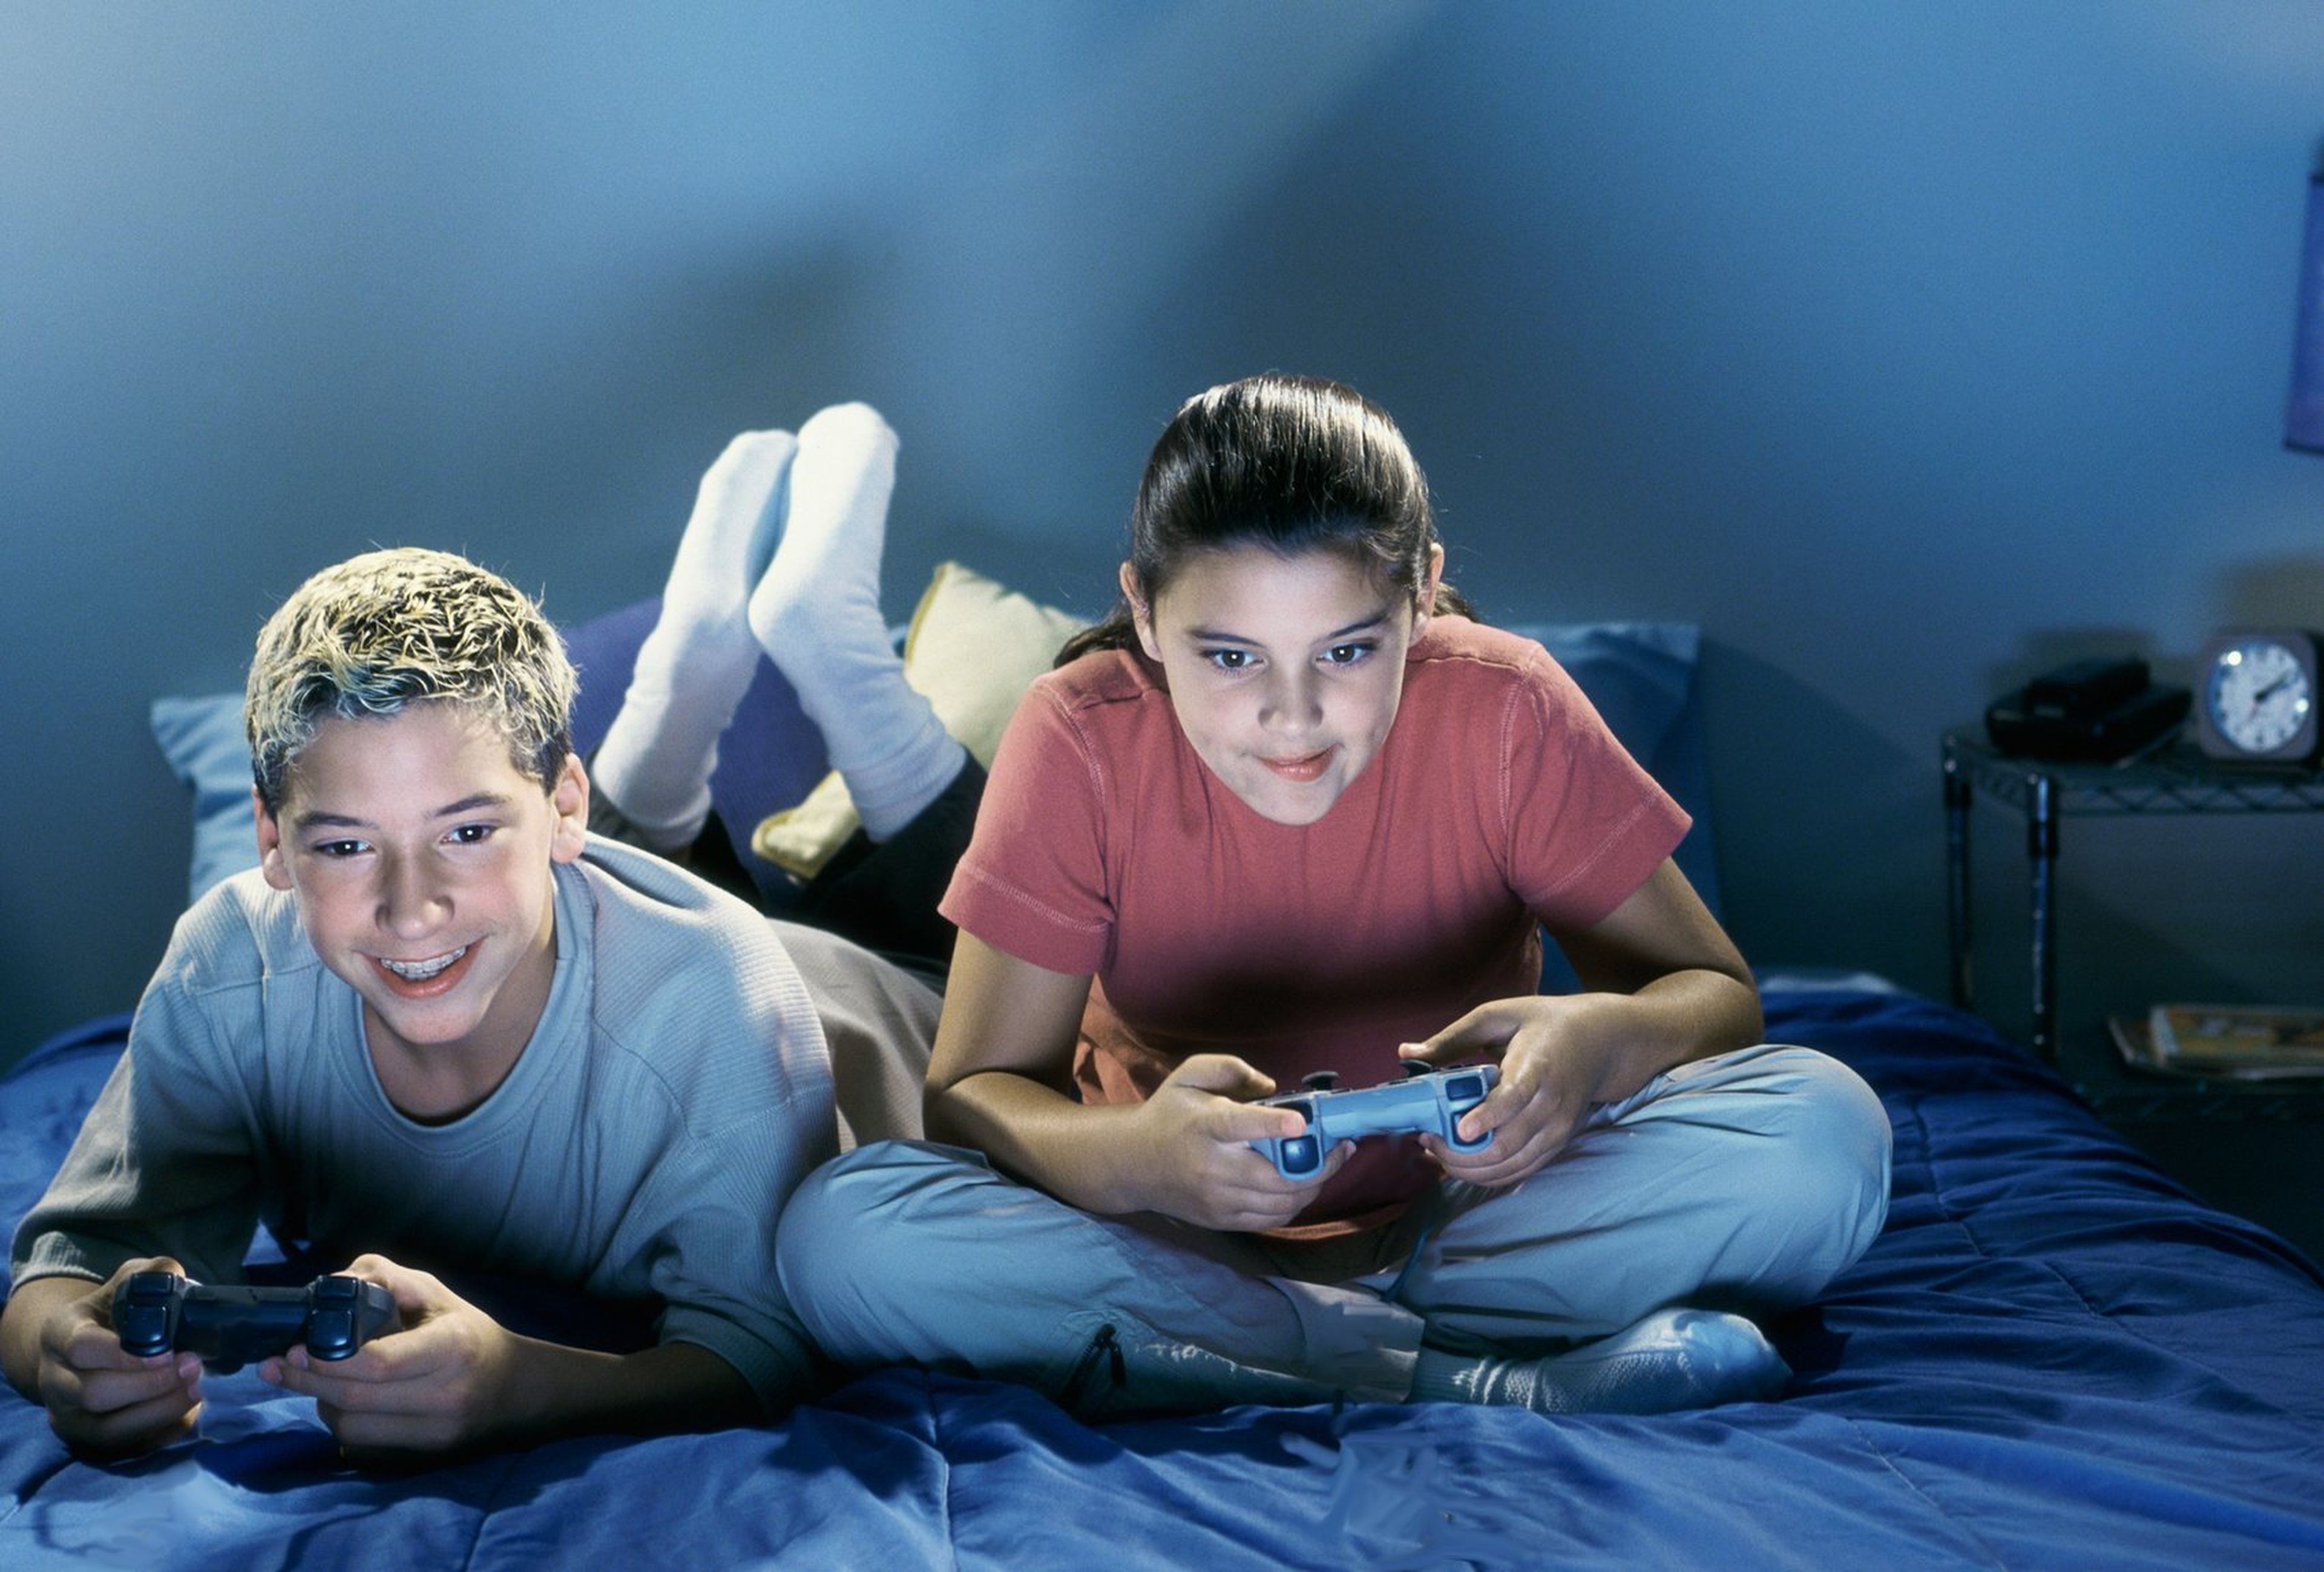 Play games x хьюстон. Подросток геймер. Игровая зависимость у подростков. Видеоигры для детей. Игровая зависимость картинки.